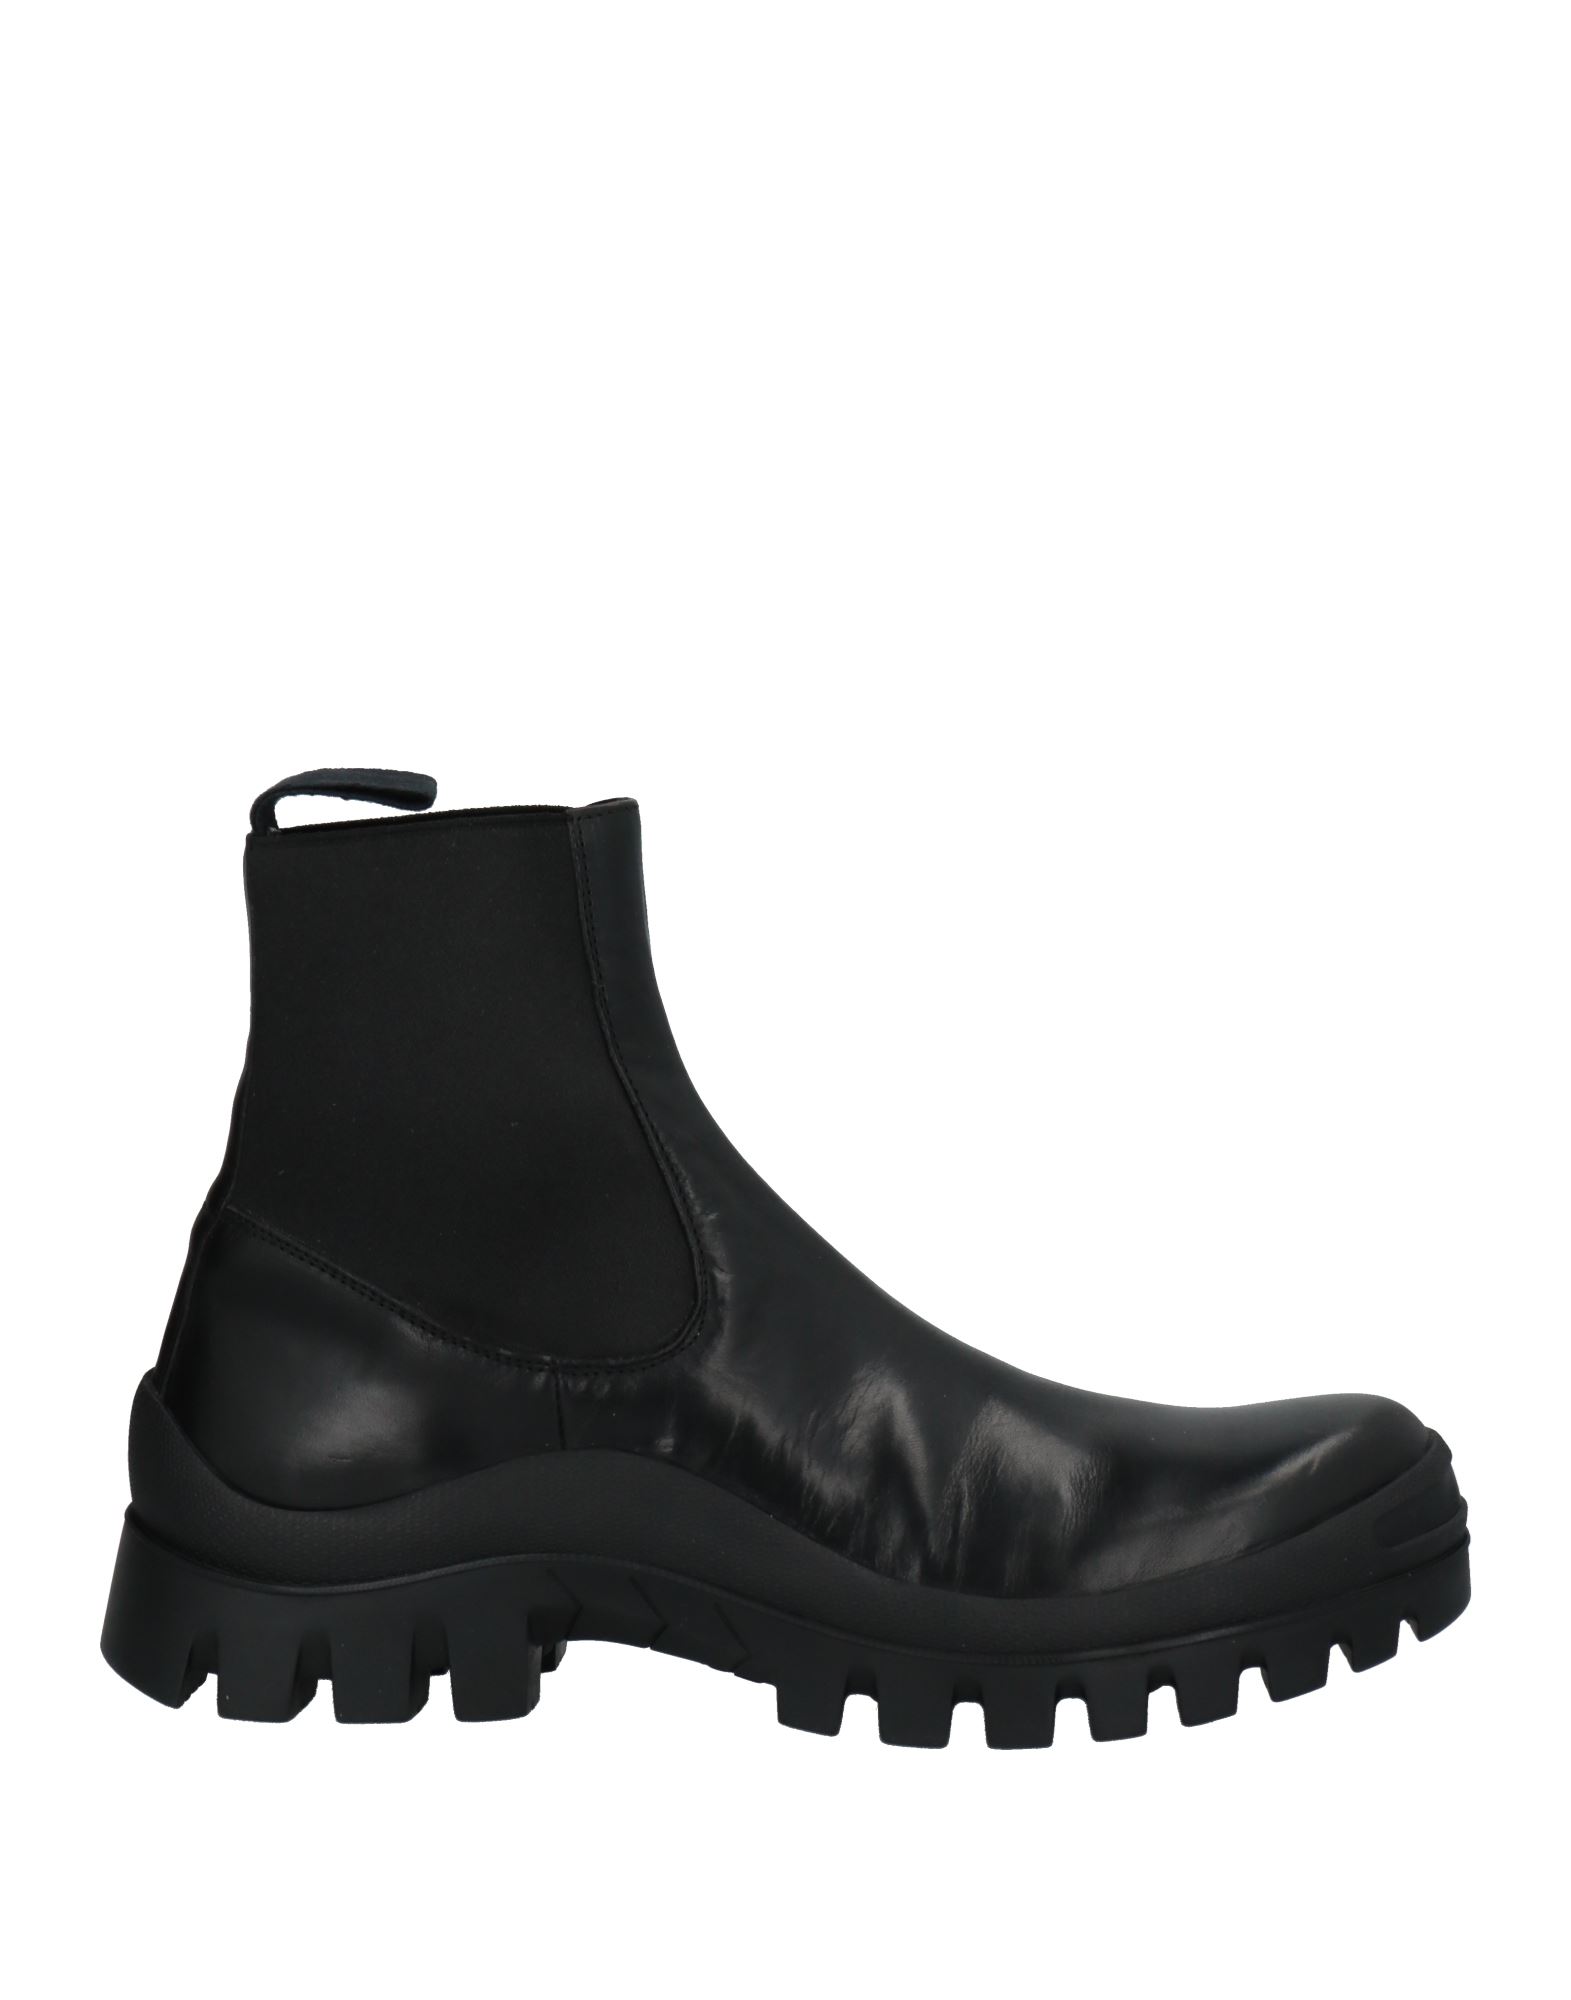 Shop Atp Atelier Woman Ankle Boots Black Size 8 Cowhide